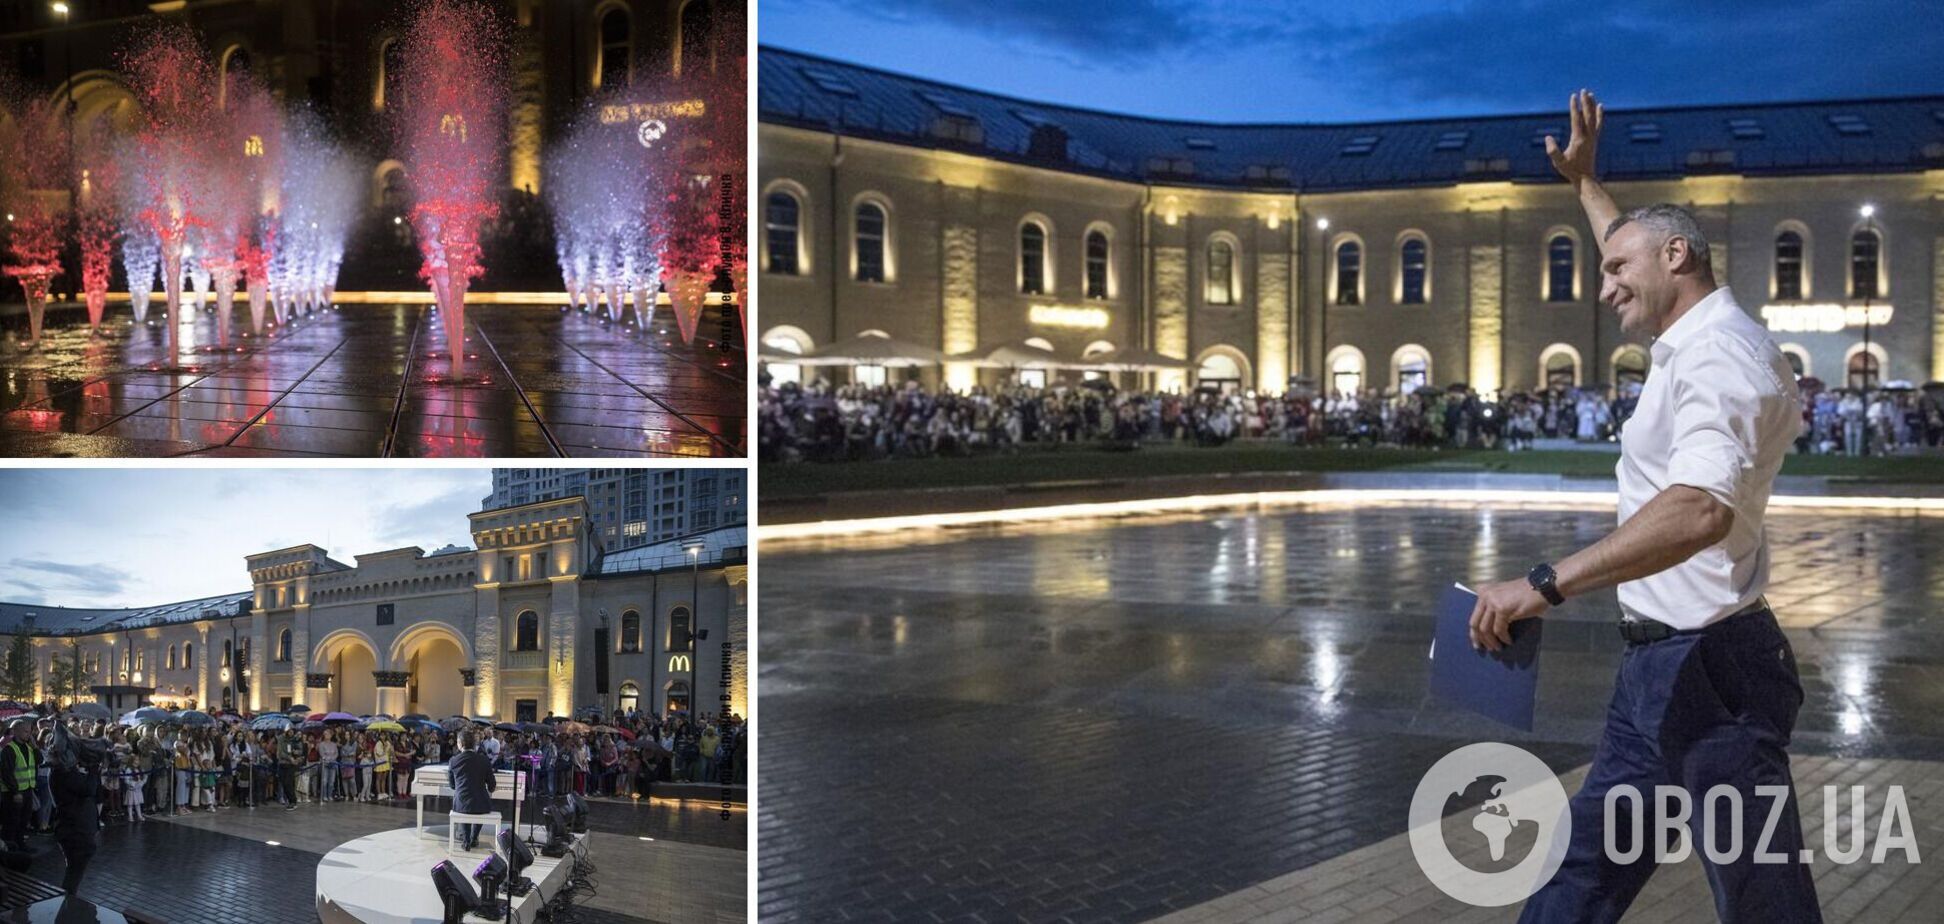 Кличко открыл новое общественное пространство на Арсенальной площади